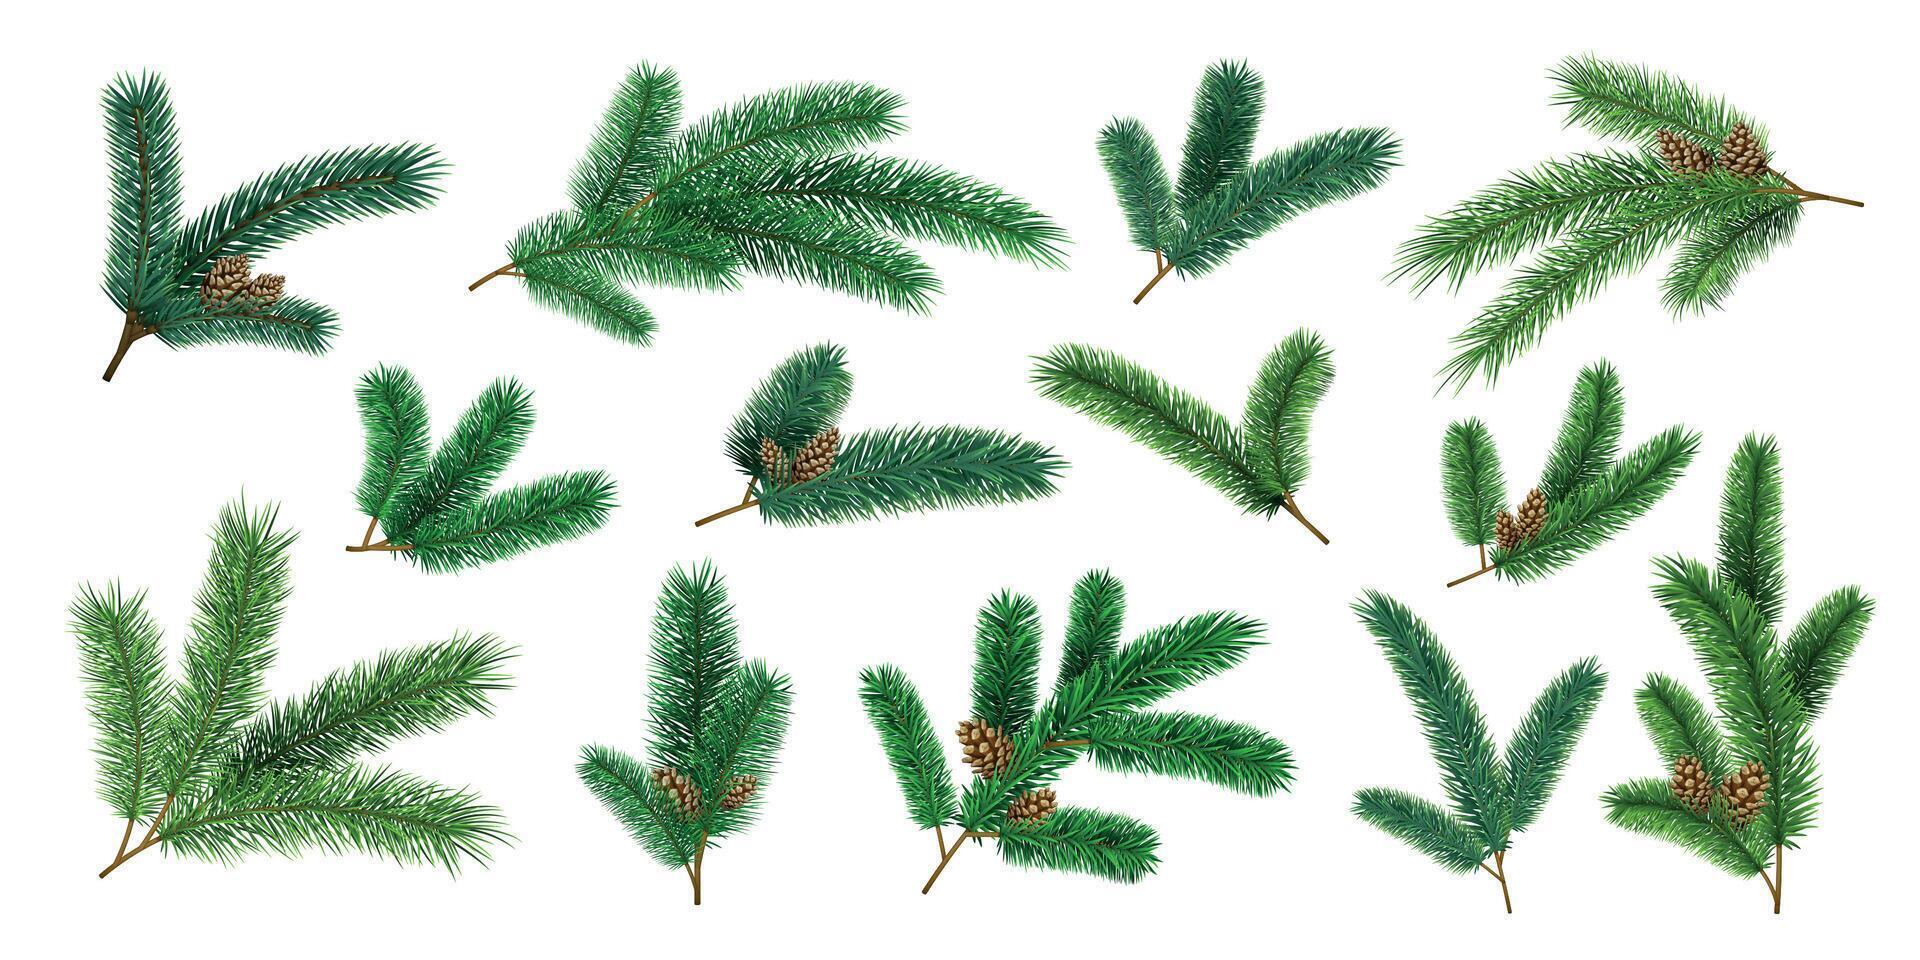 realista Navidad árbol ramas y abeto leña menuda con piña. hojas perennes Navidad pino decoración guirnaldas 3d bosque pinos agujas vector conjunto